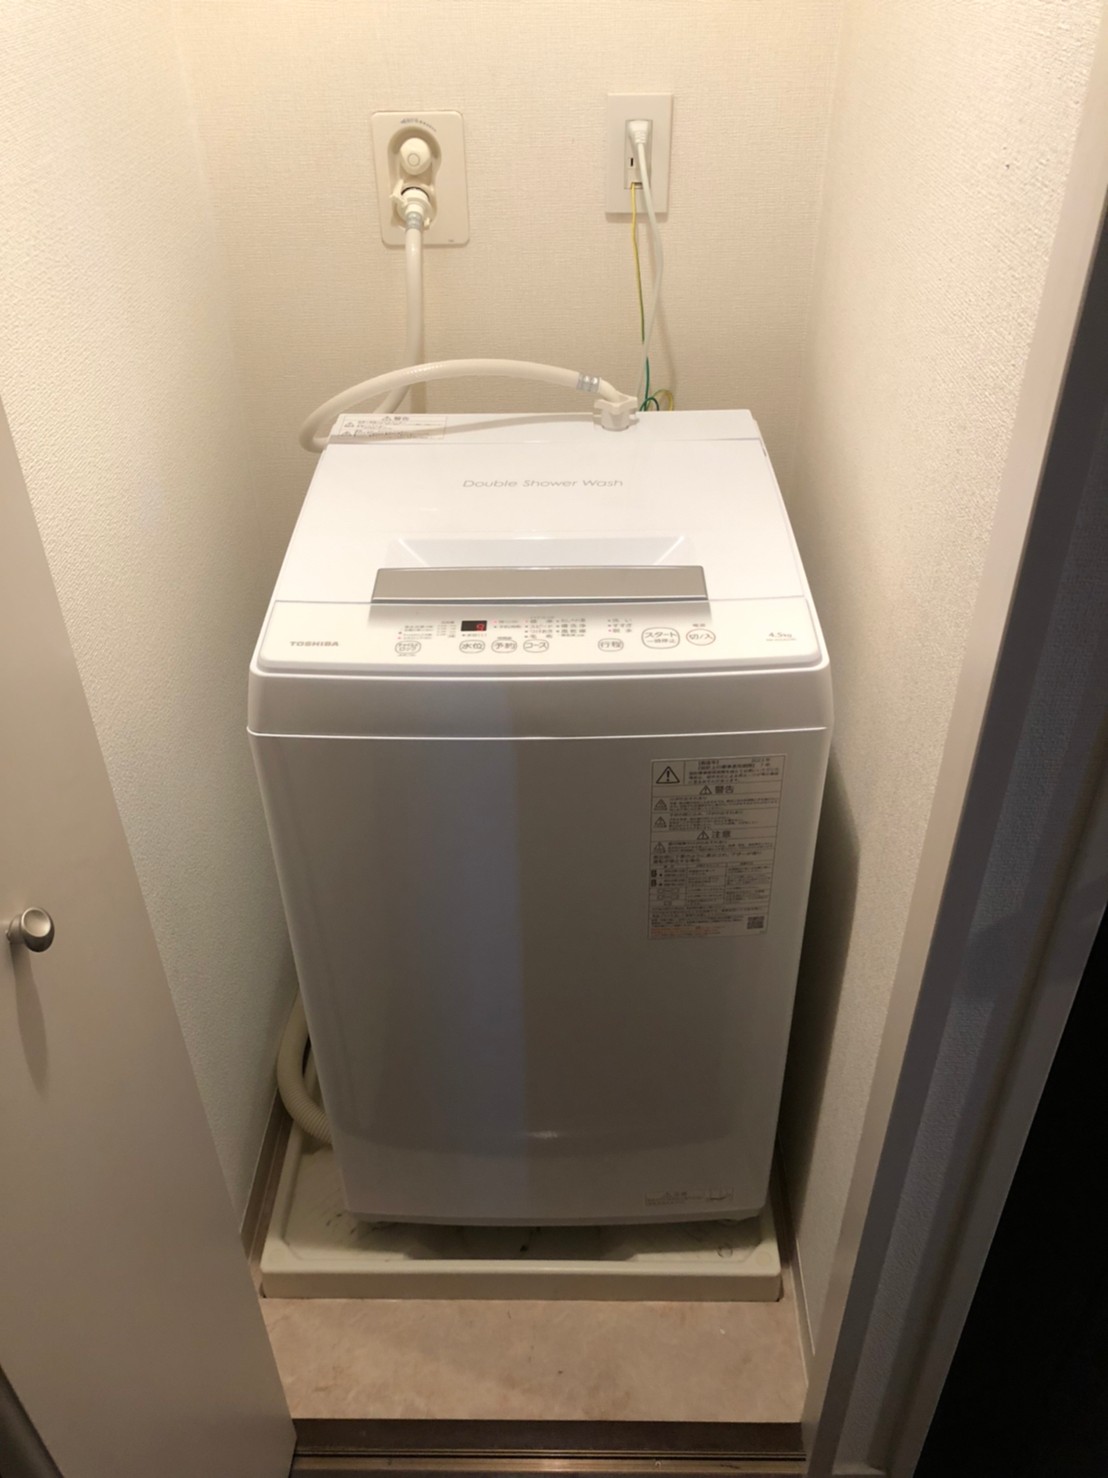 洗濯機 4.5kg 2020年製 ヤマダ電機 YAMADA YWM-T45H1 ホワイト ヤマダ 